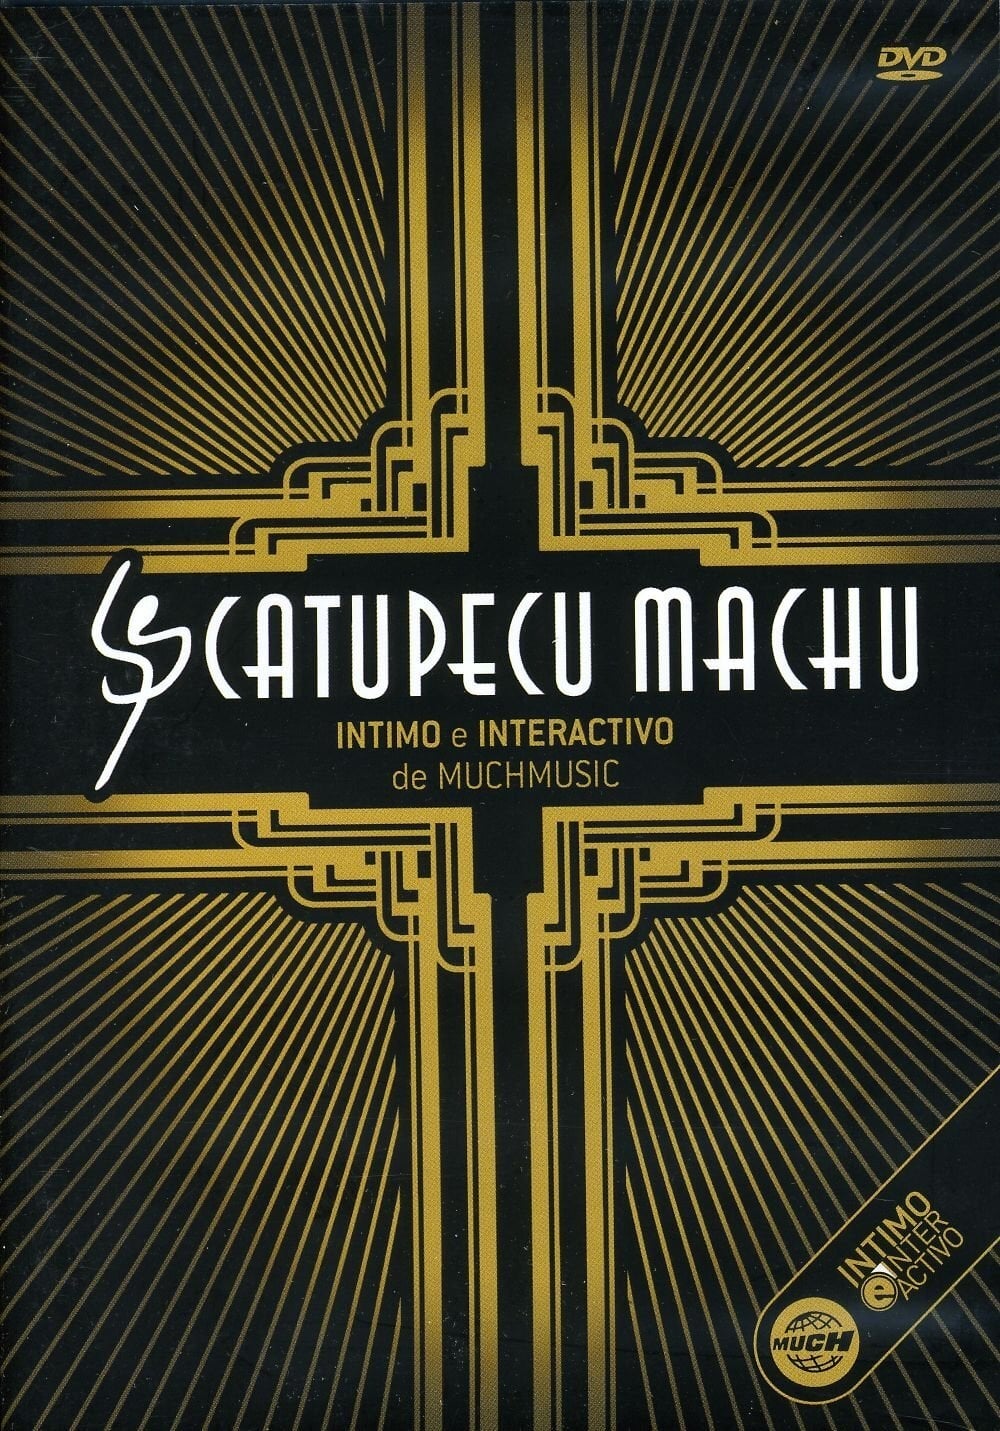 Catupecu Machu: Intimate and Interactive